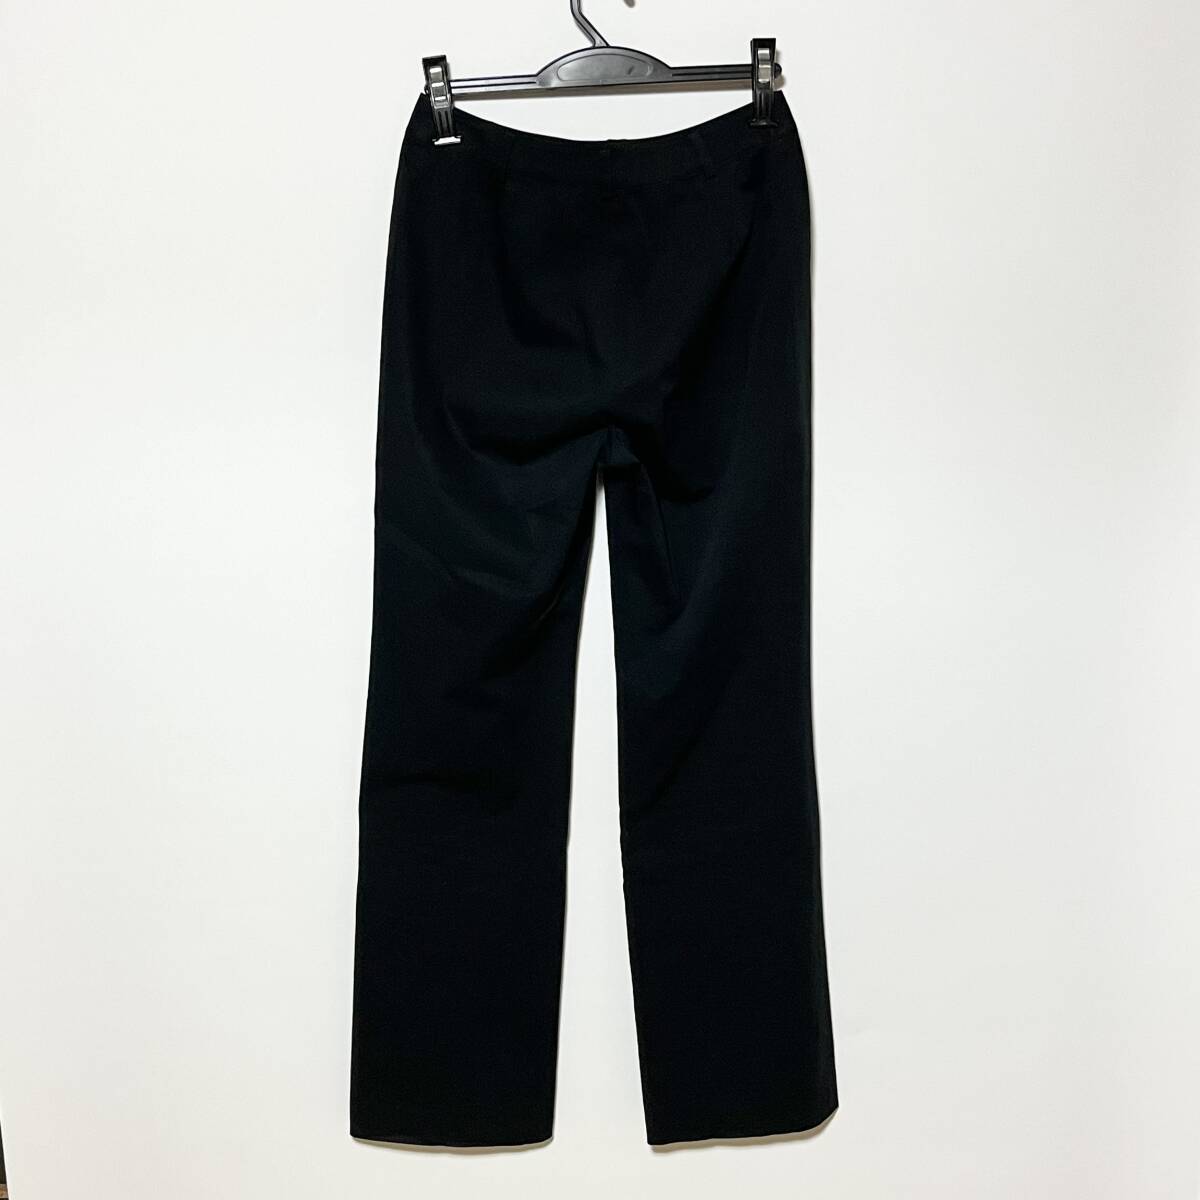 GEORGES RECH ジョルジュレッシュ パンツ PARIS レディース ズボン size38 黒 ブラック パンツ ファッション 女性 S M L X XL サイズ_画像2